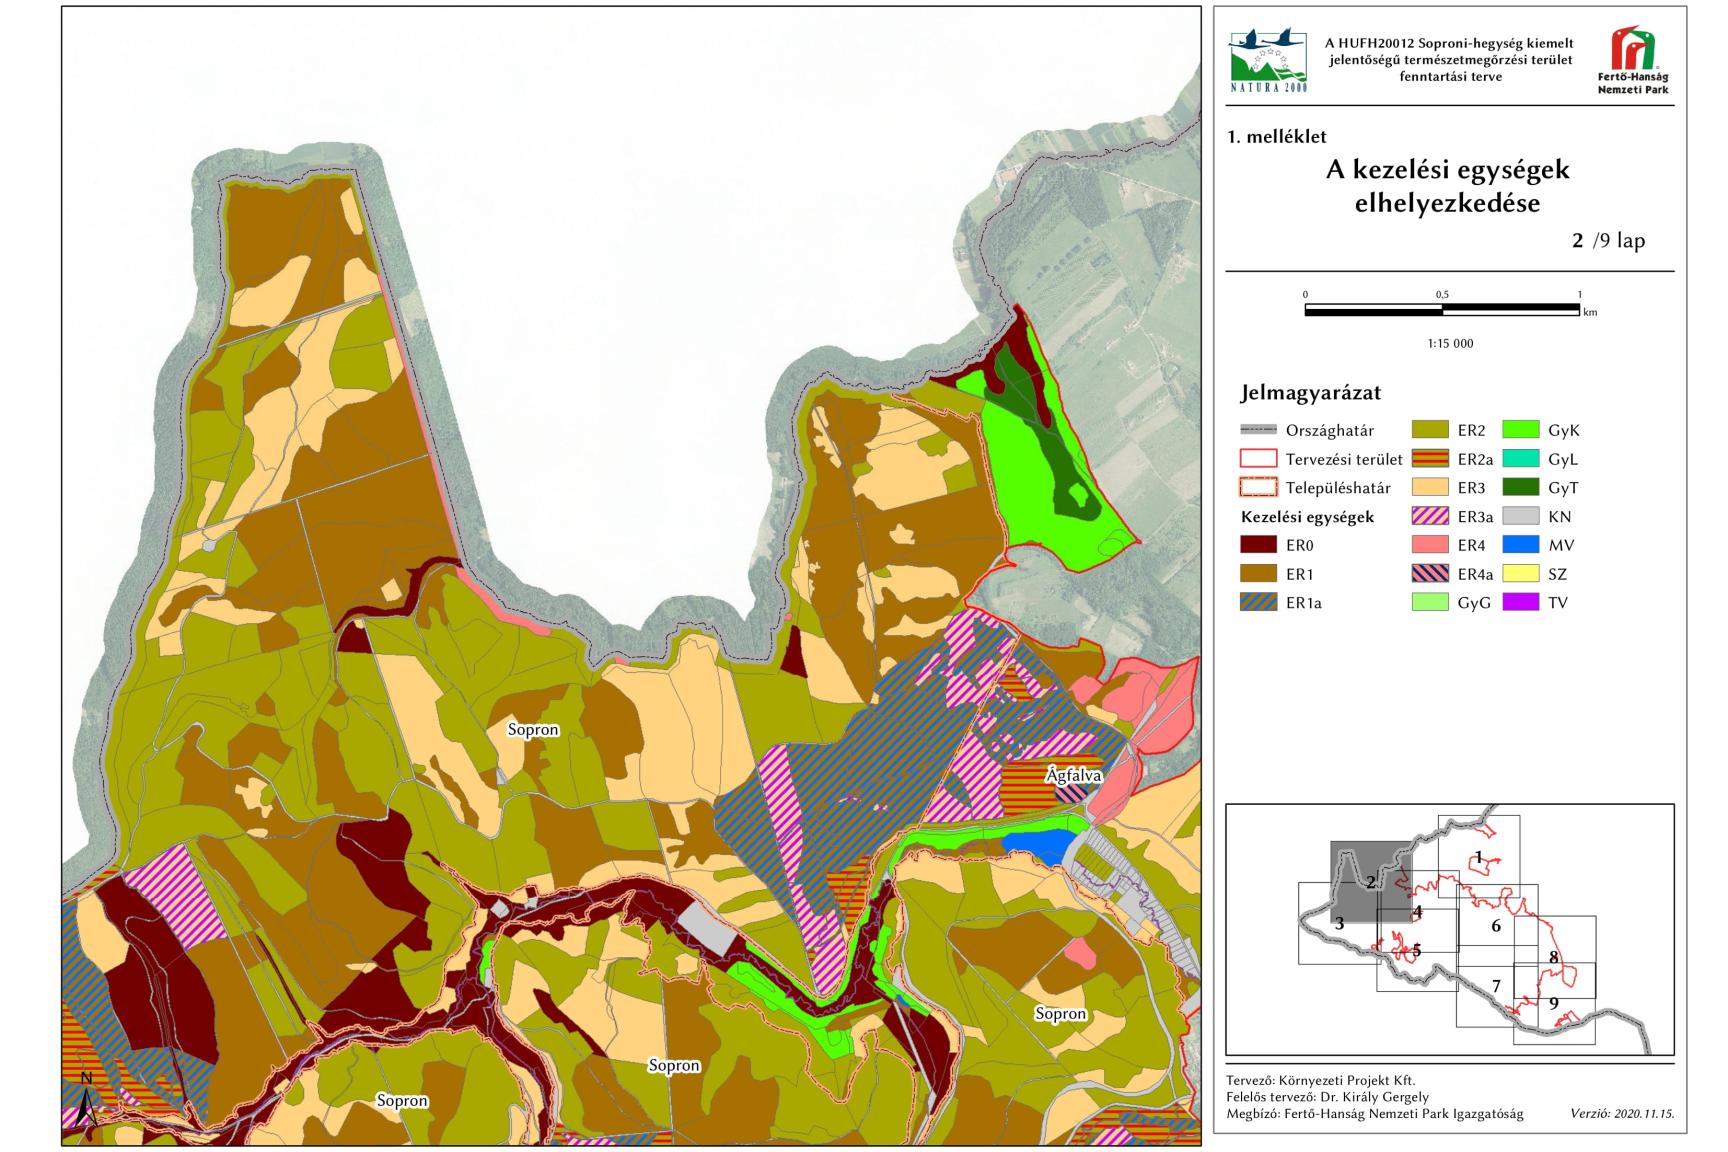 2. ábra: A Soproni-hegység kiemelt jelentőségű természetmegőrzési terület 2. szelvényének kezelési egységei